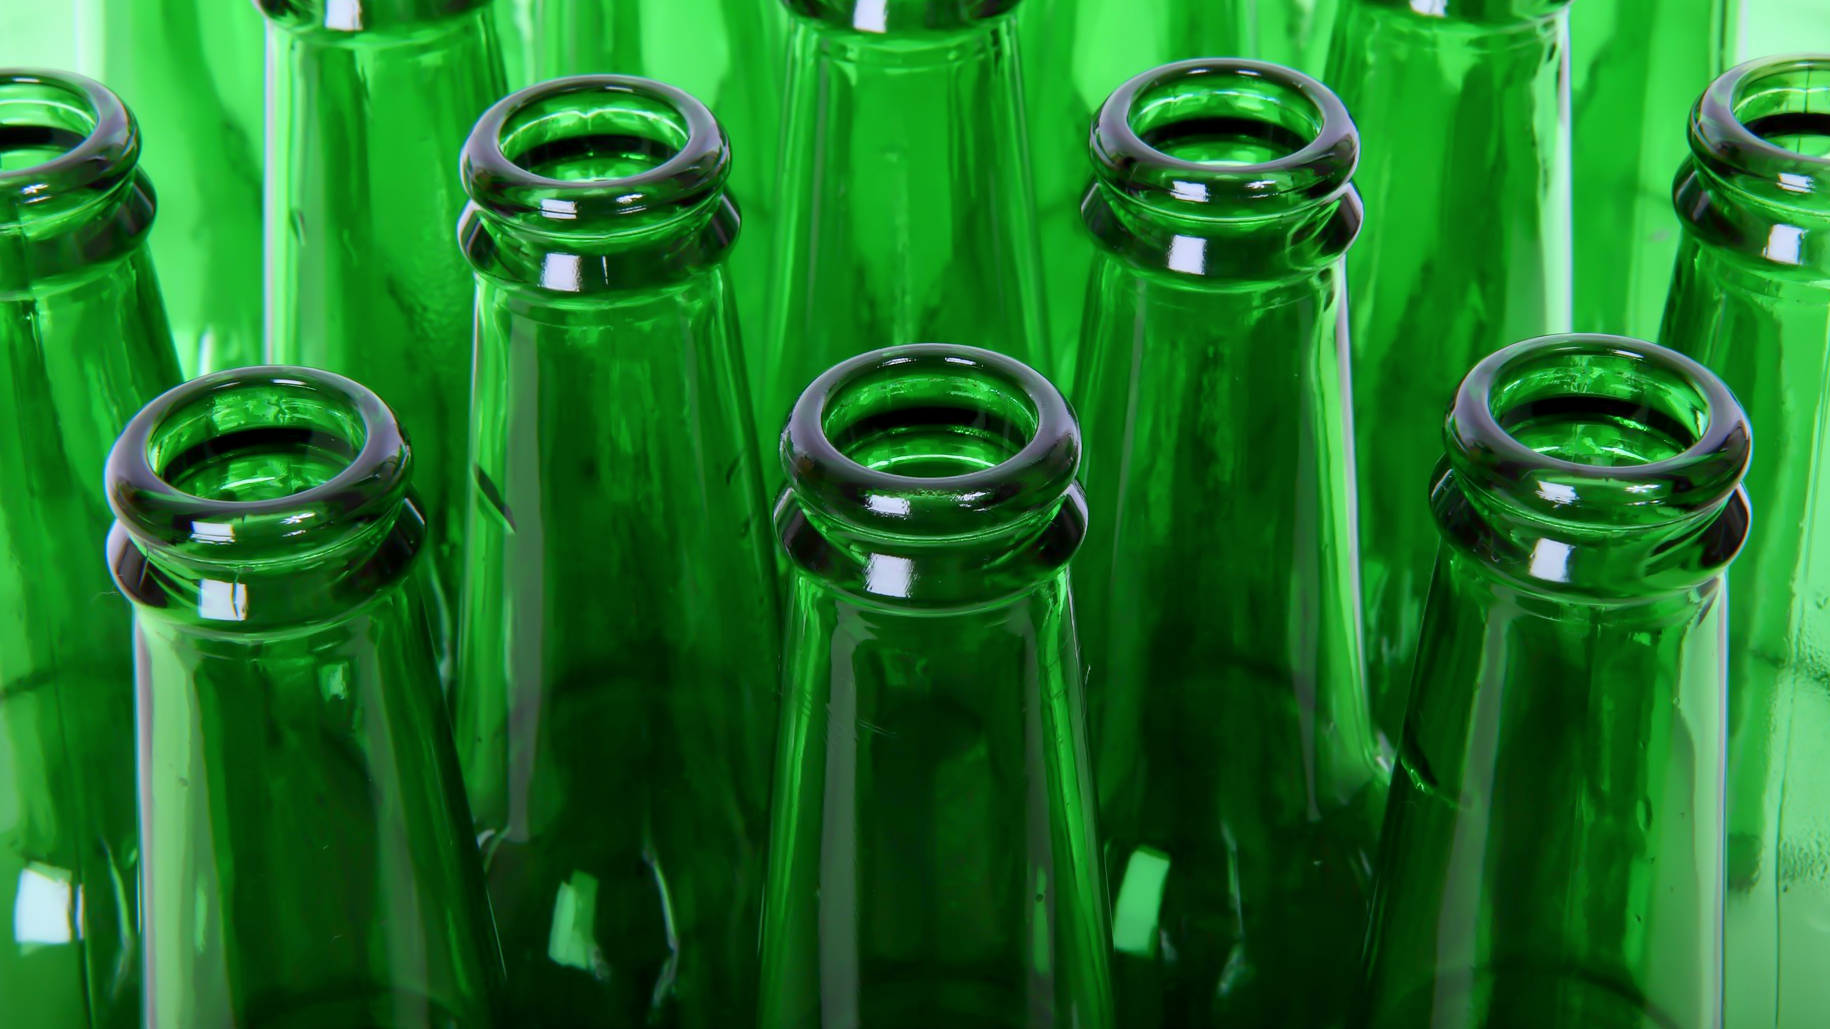 Reciclado de botellas de vidrio